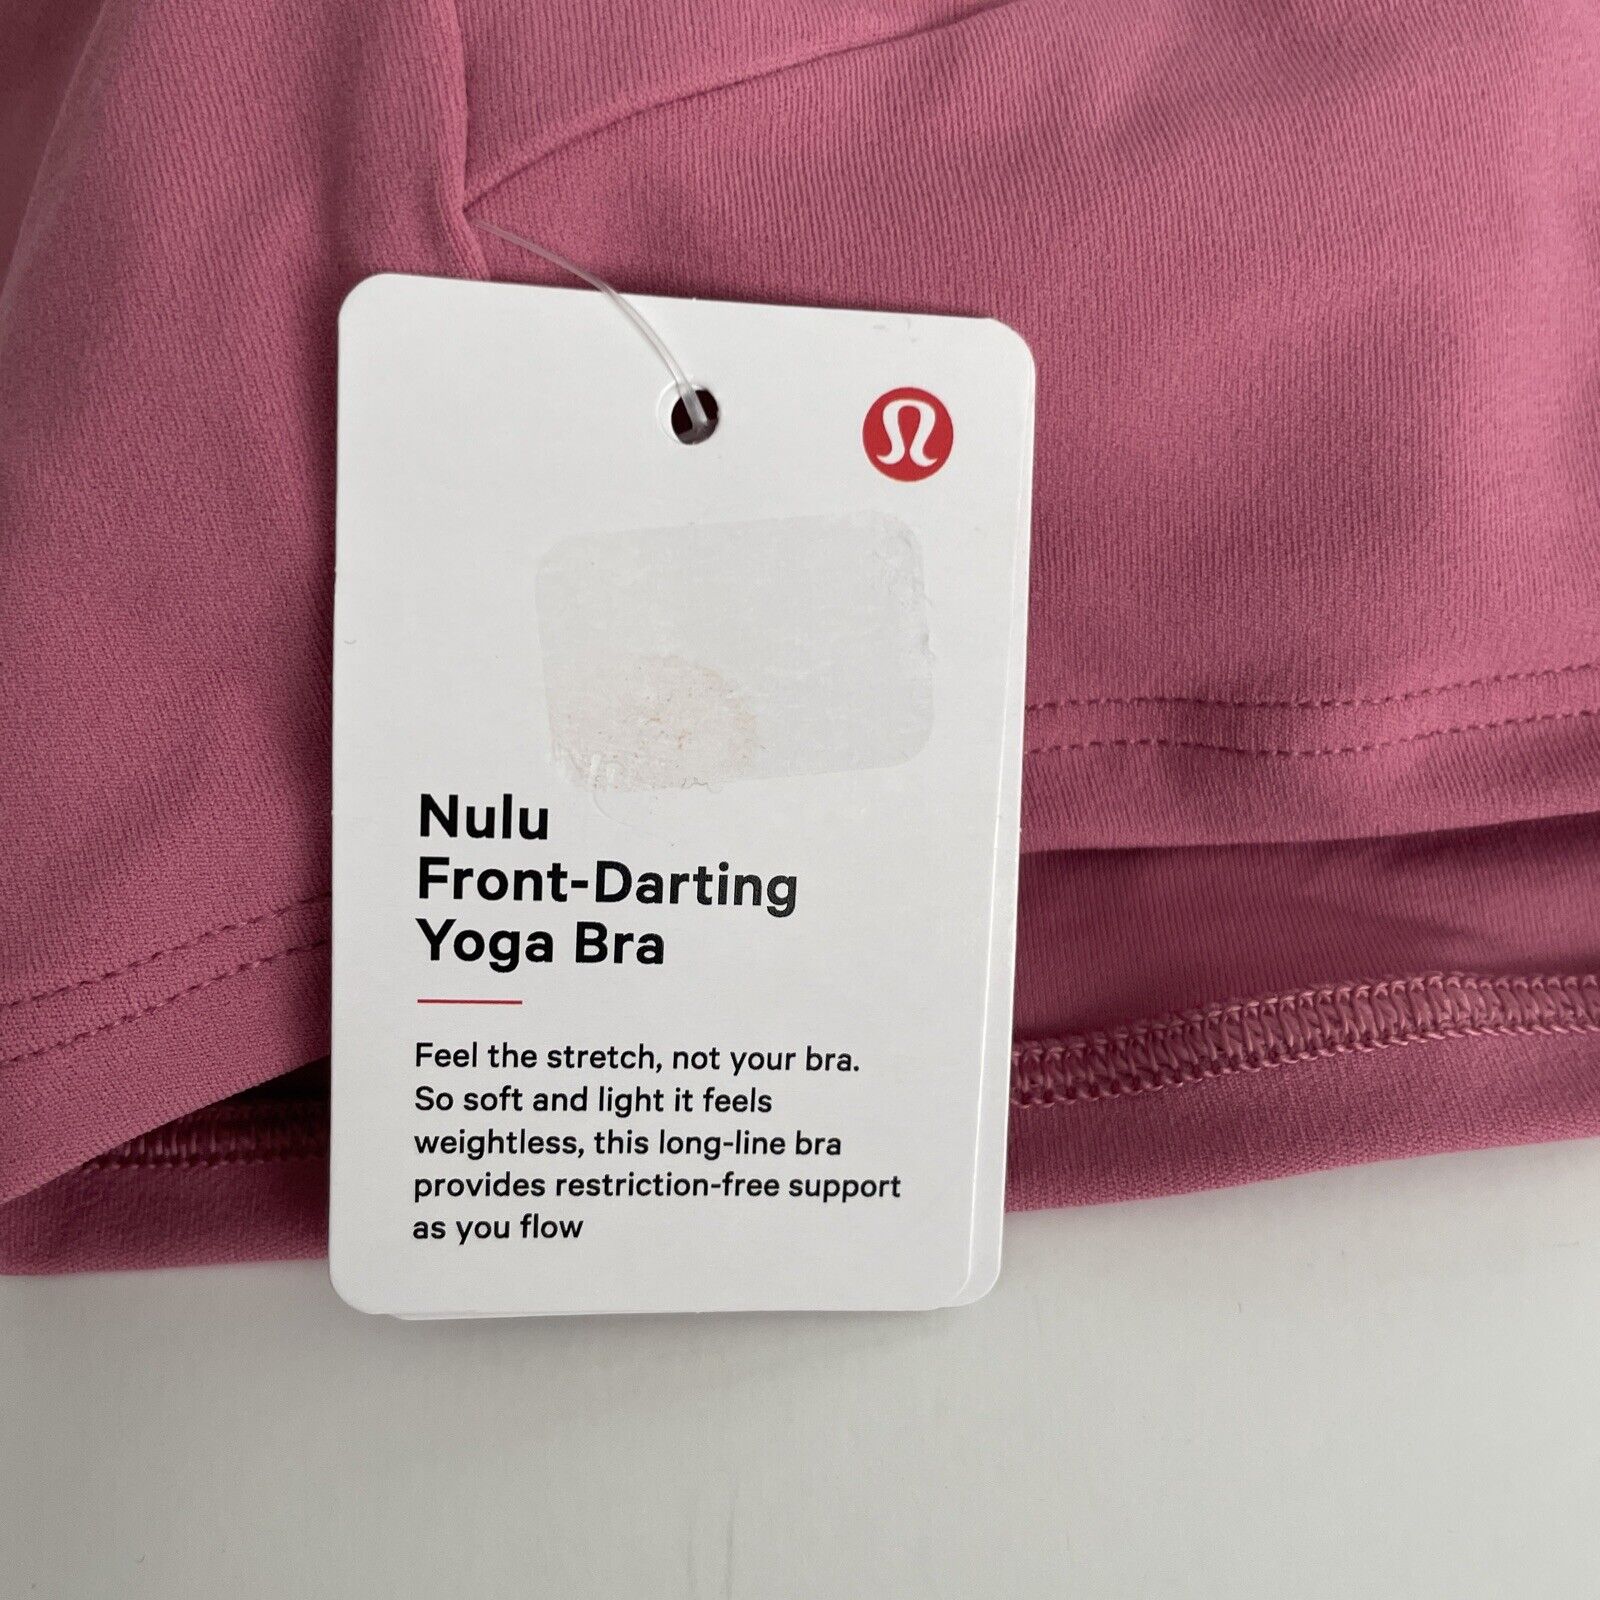 Lululemon Nulu Front Darting Yoga Bra size 4 PBOL Pink Blossom Lt Support  sports